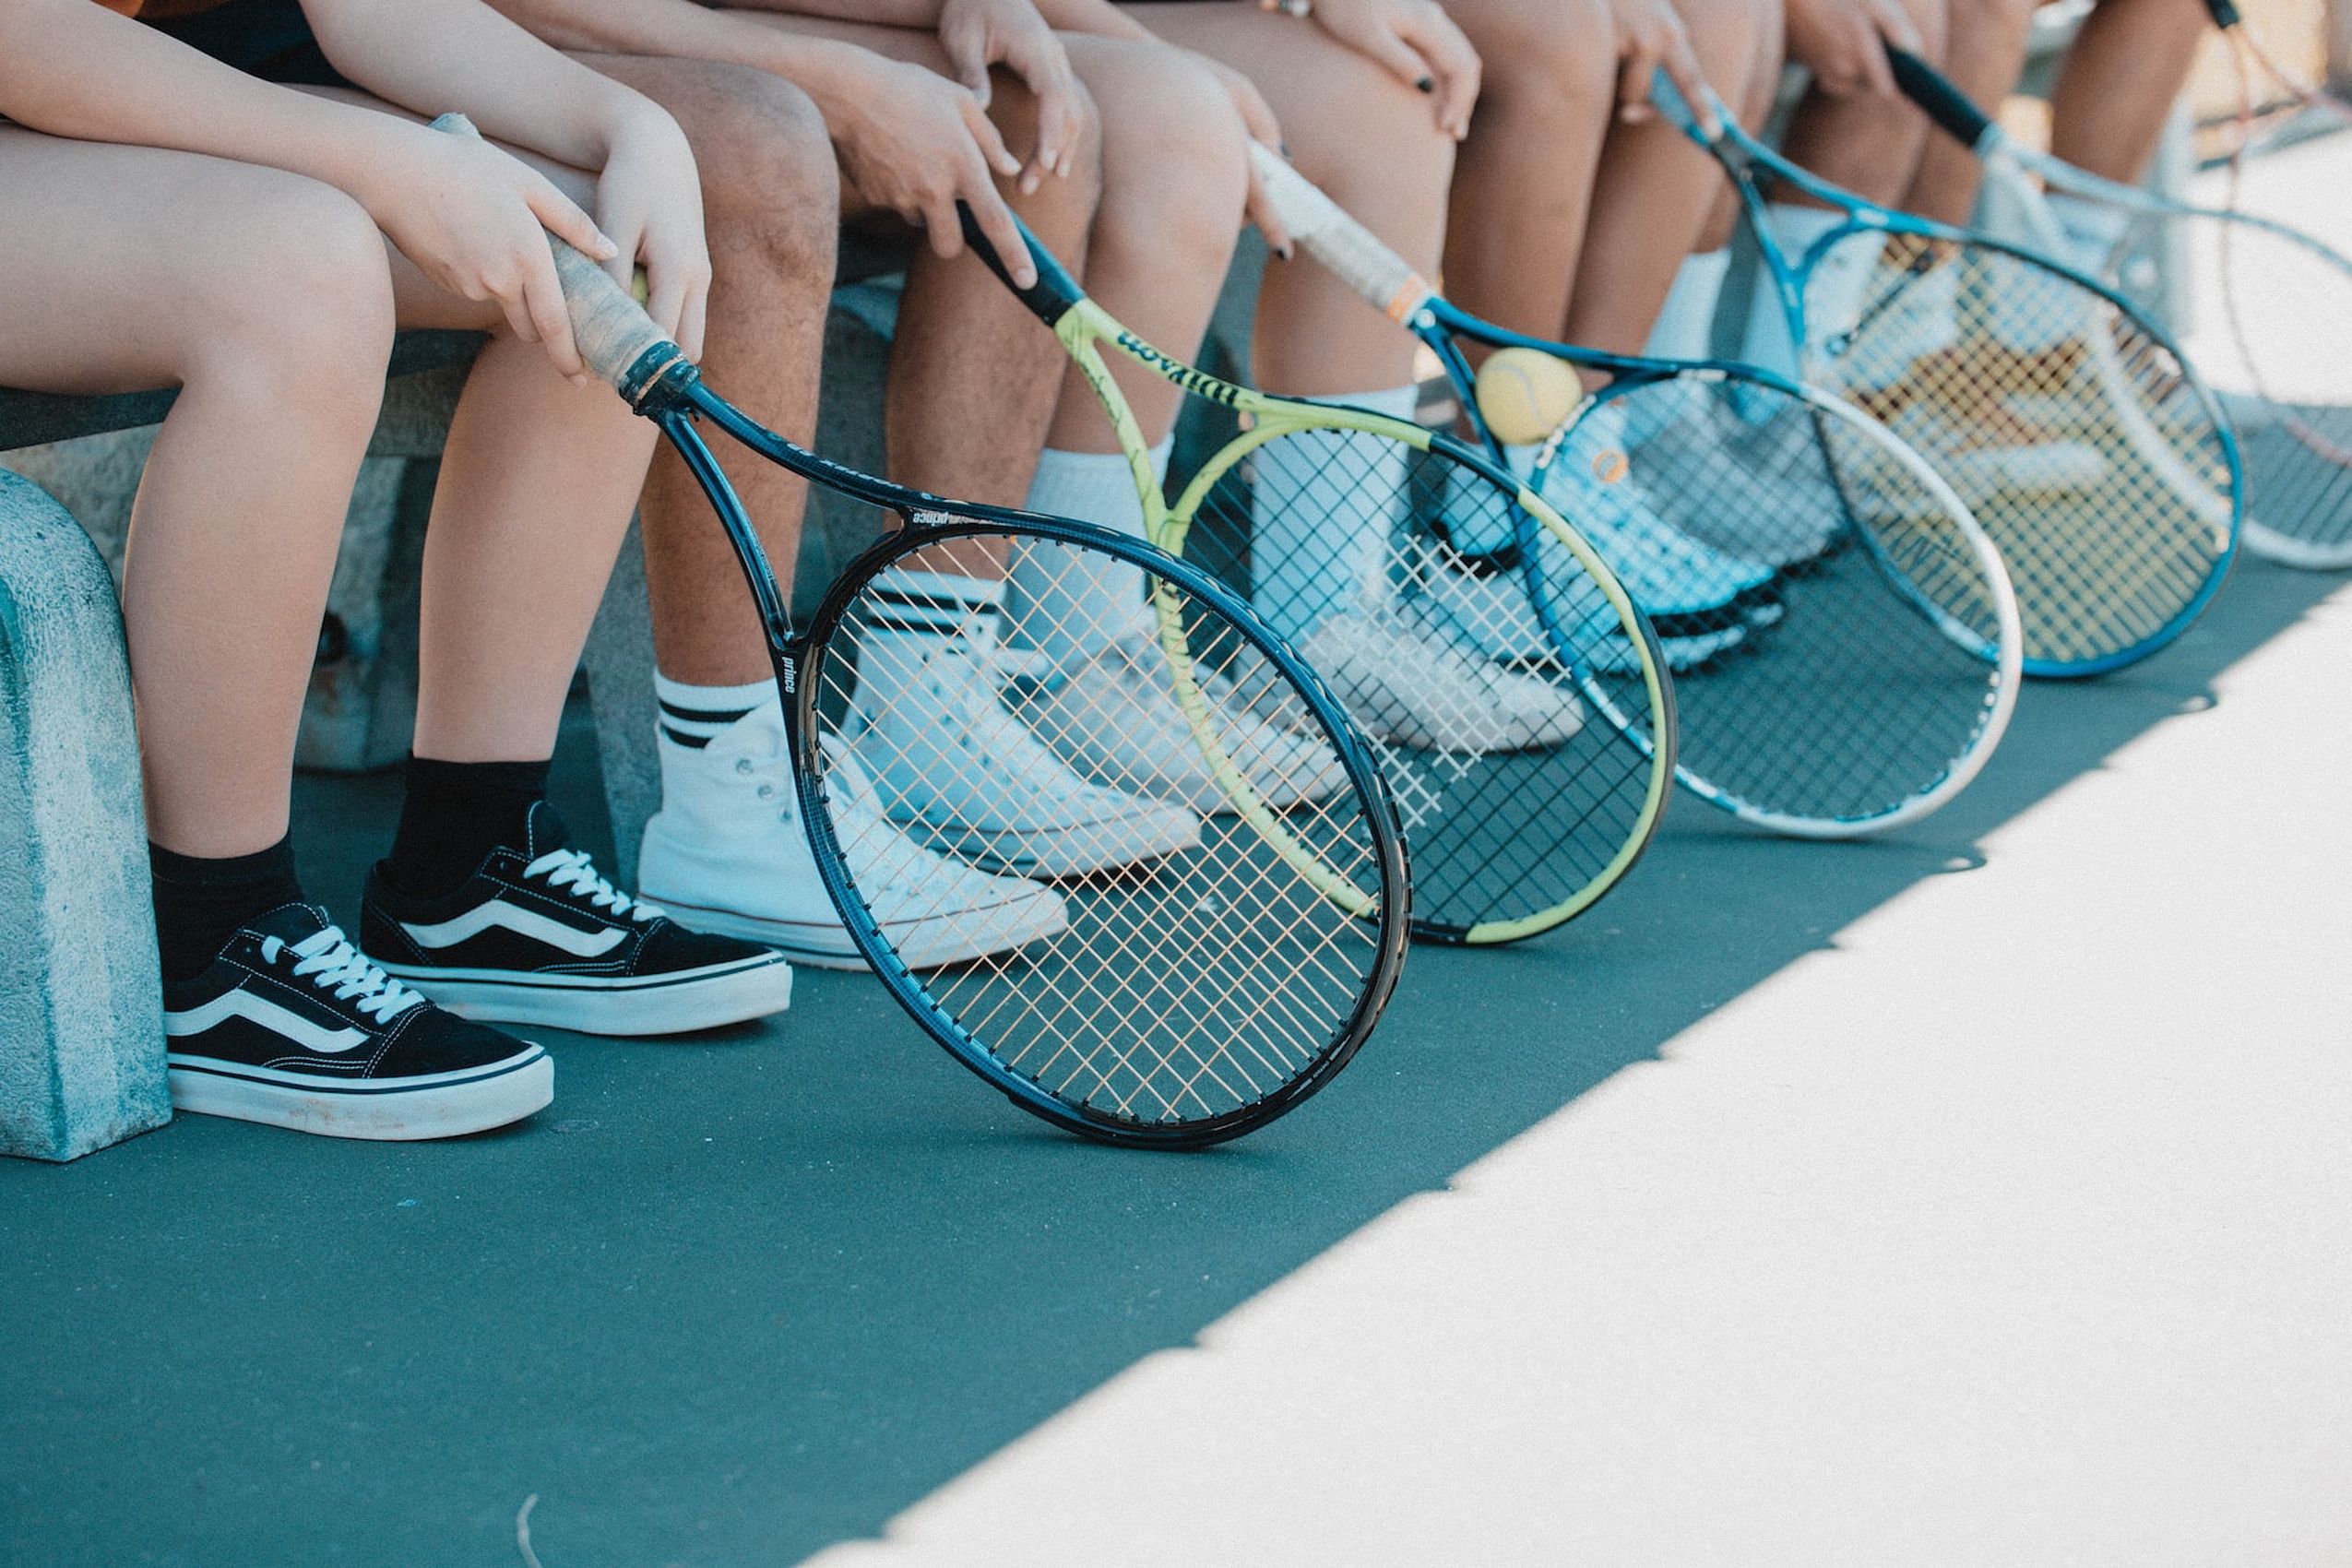 Mehrere Tennisspieler sitzen nebeneinander auf einer Bank und halten ihre Schläger in den Händen